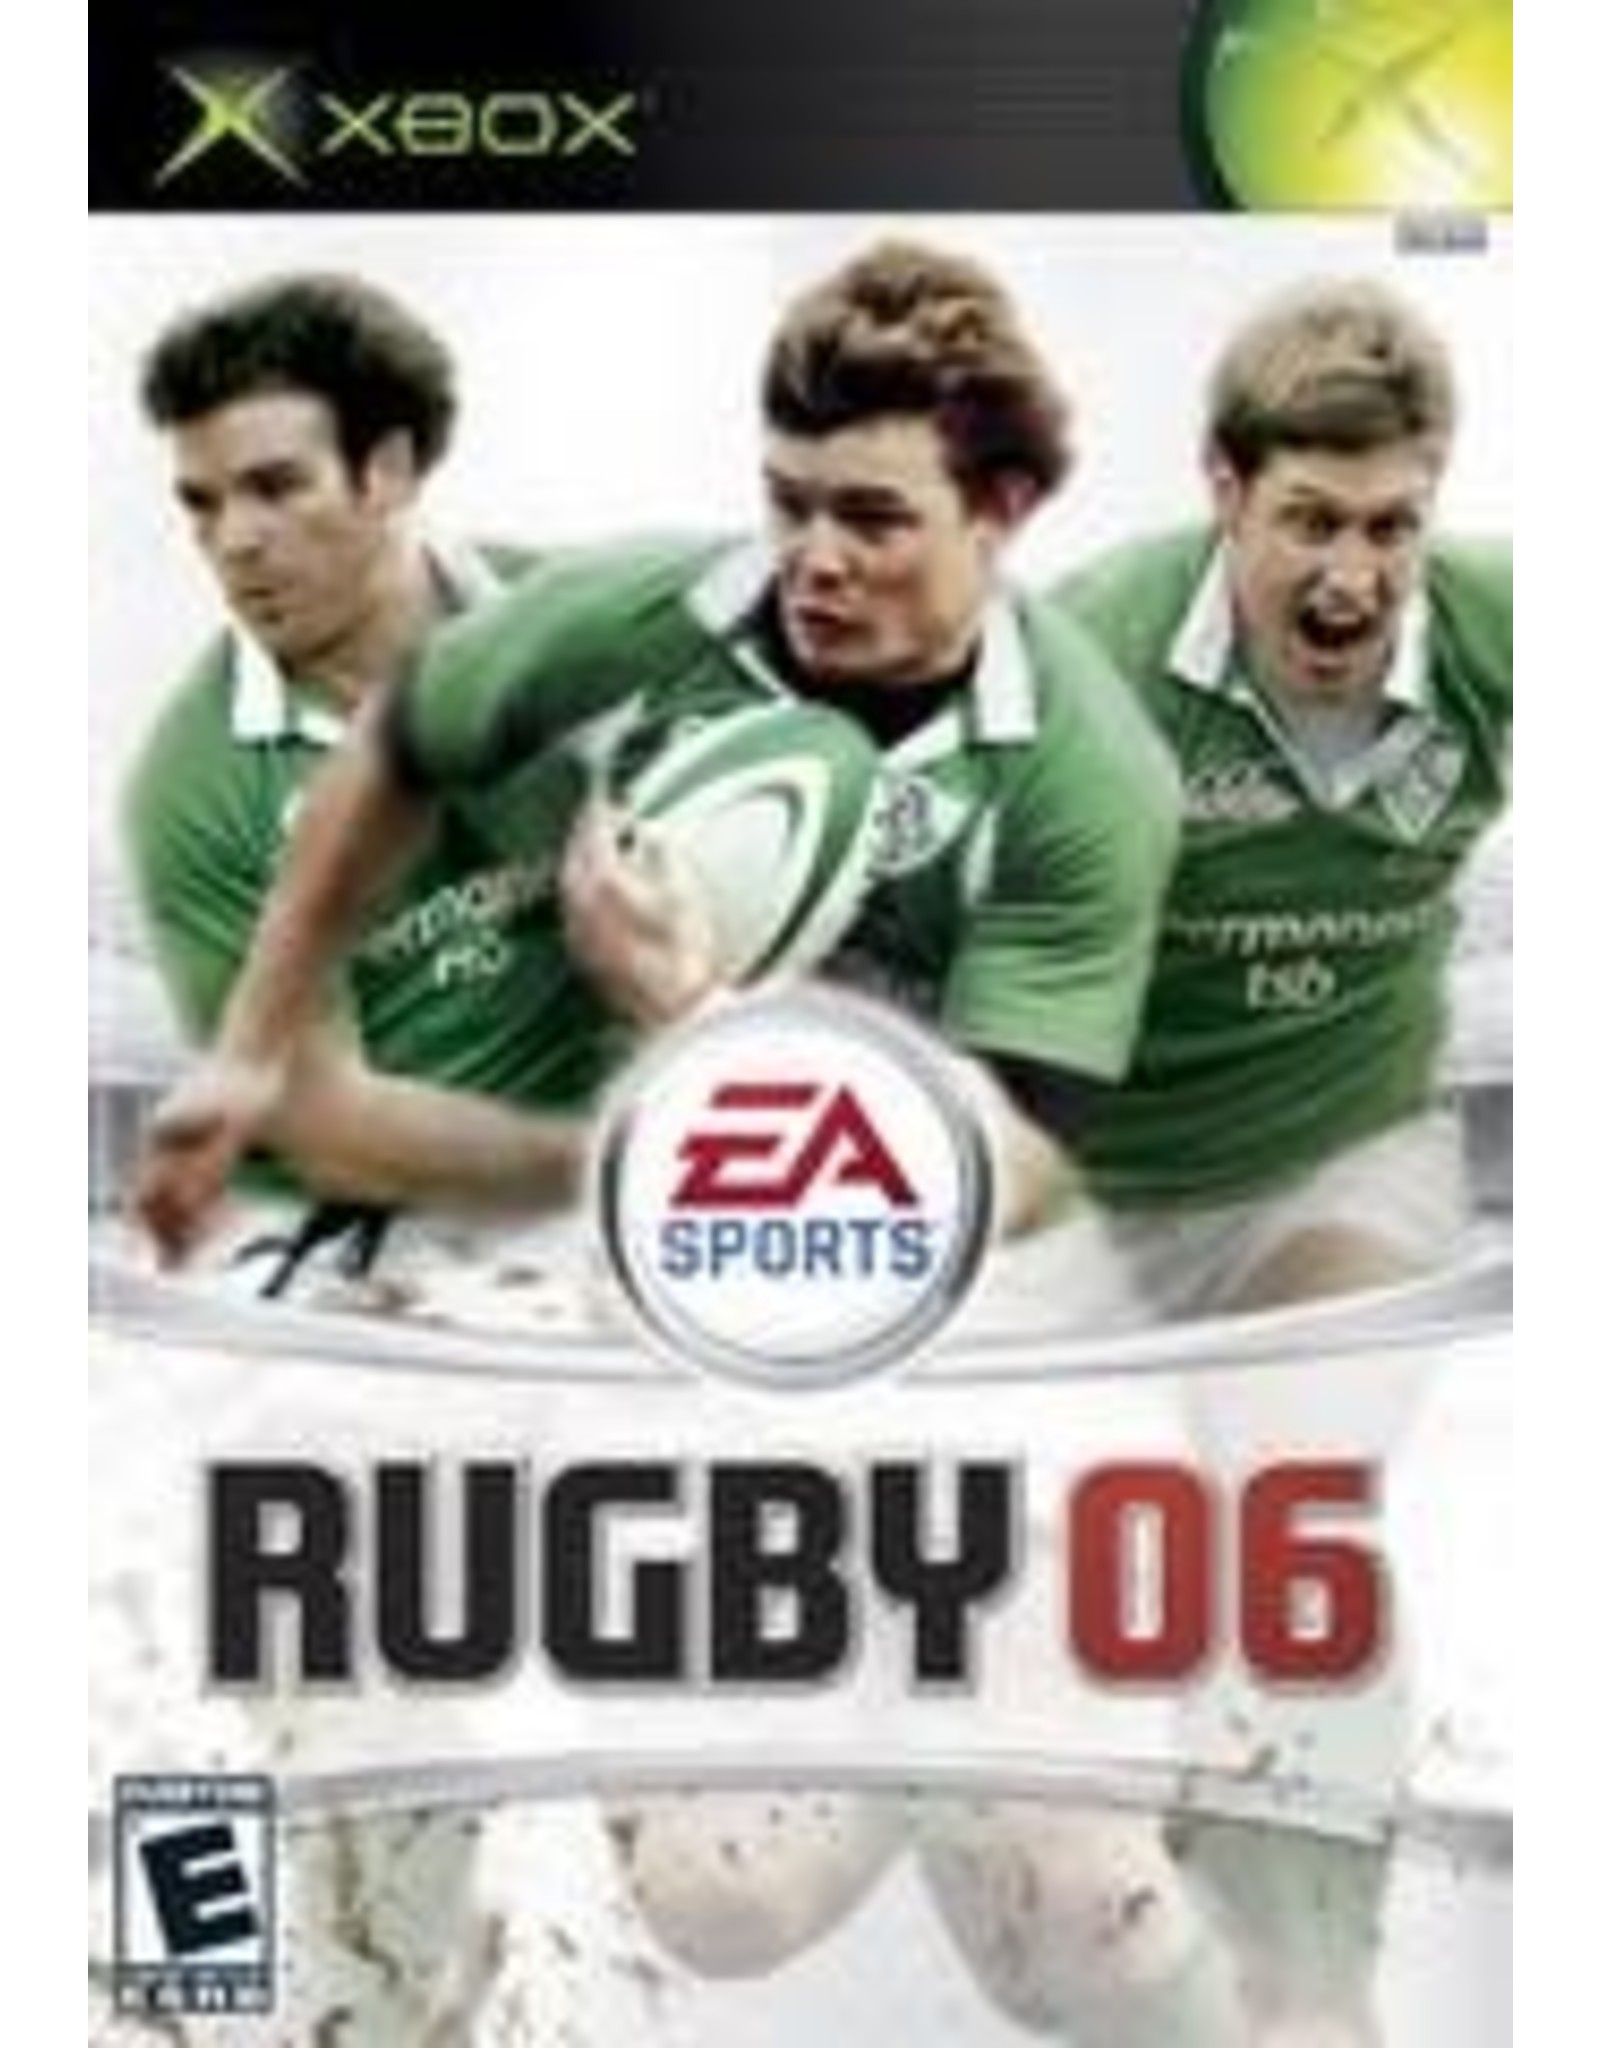 Xbox Rugby 2006 (CiB)